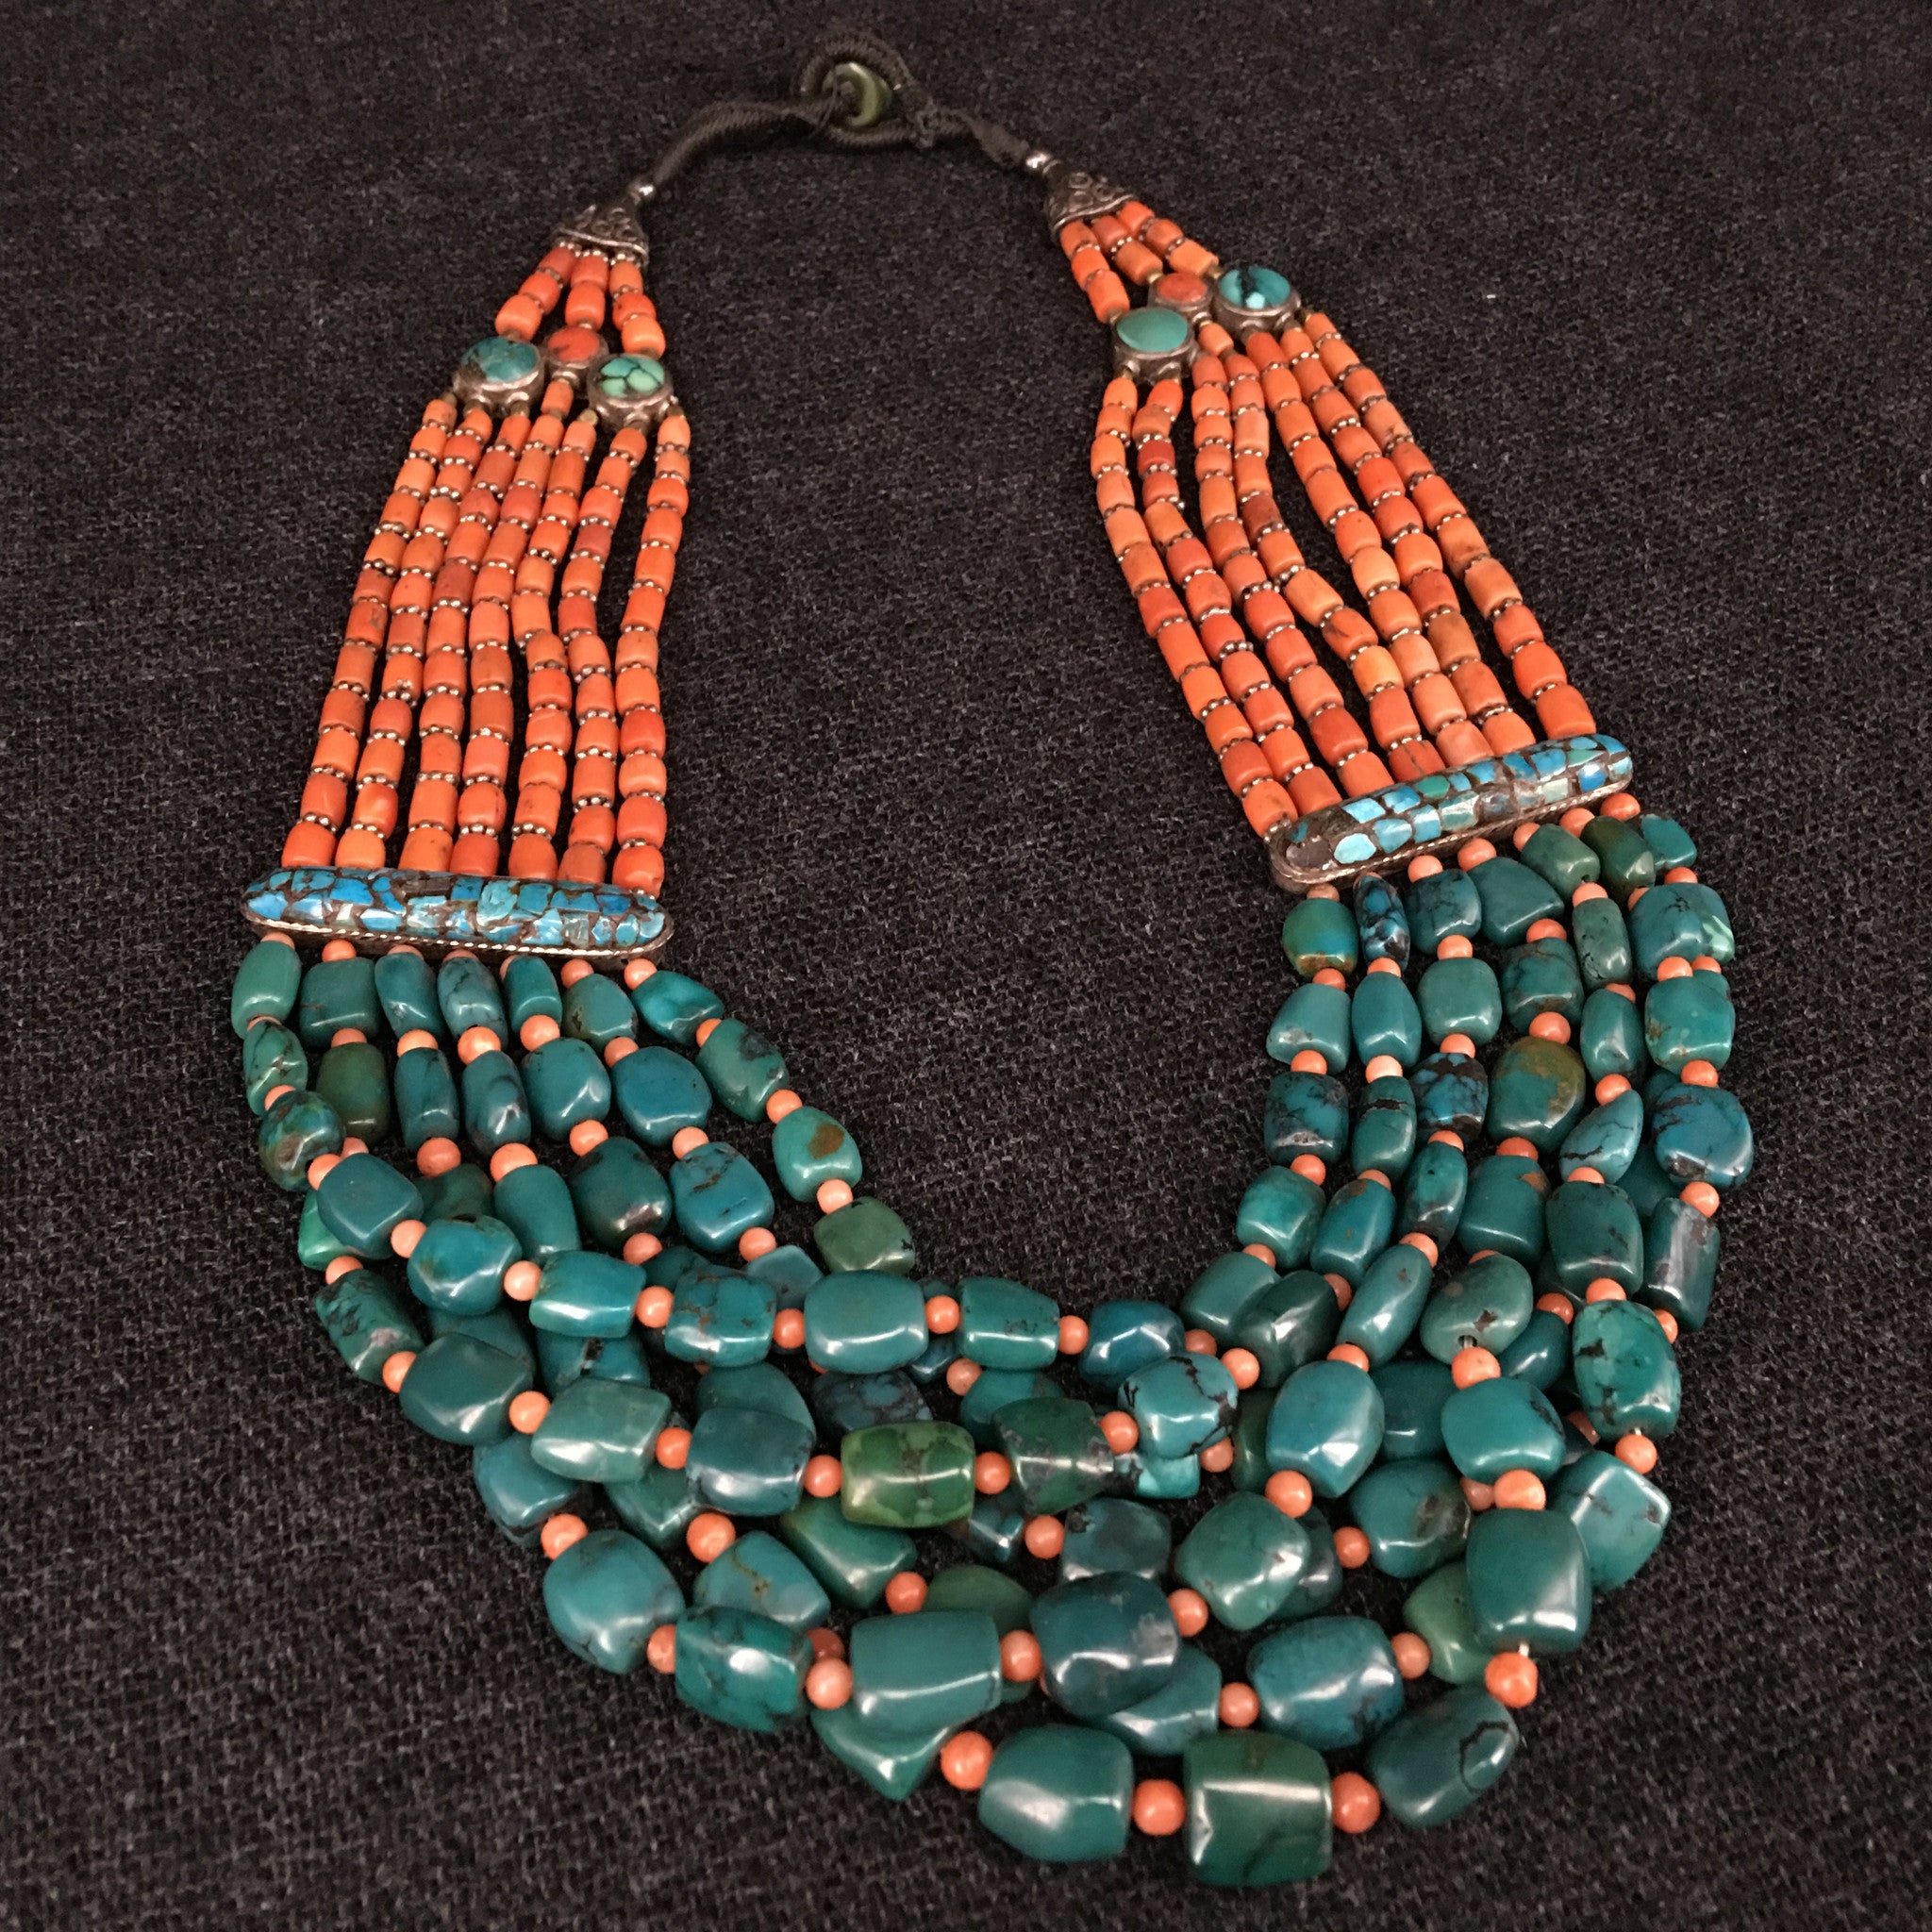 Antique Tibetan Necklace, Jewelry